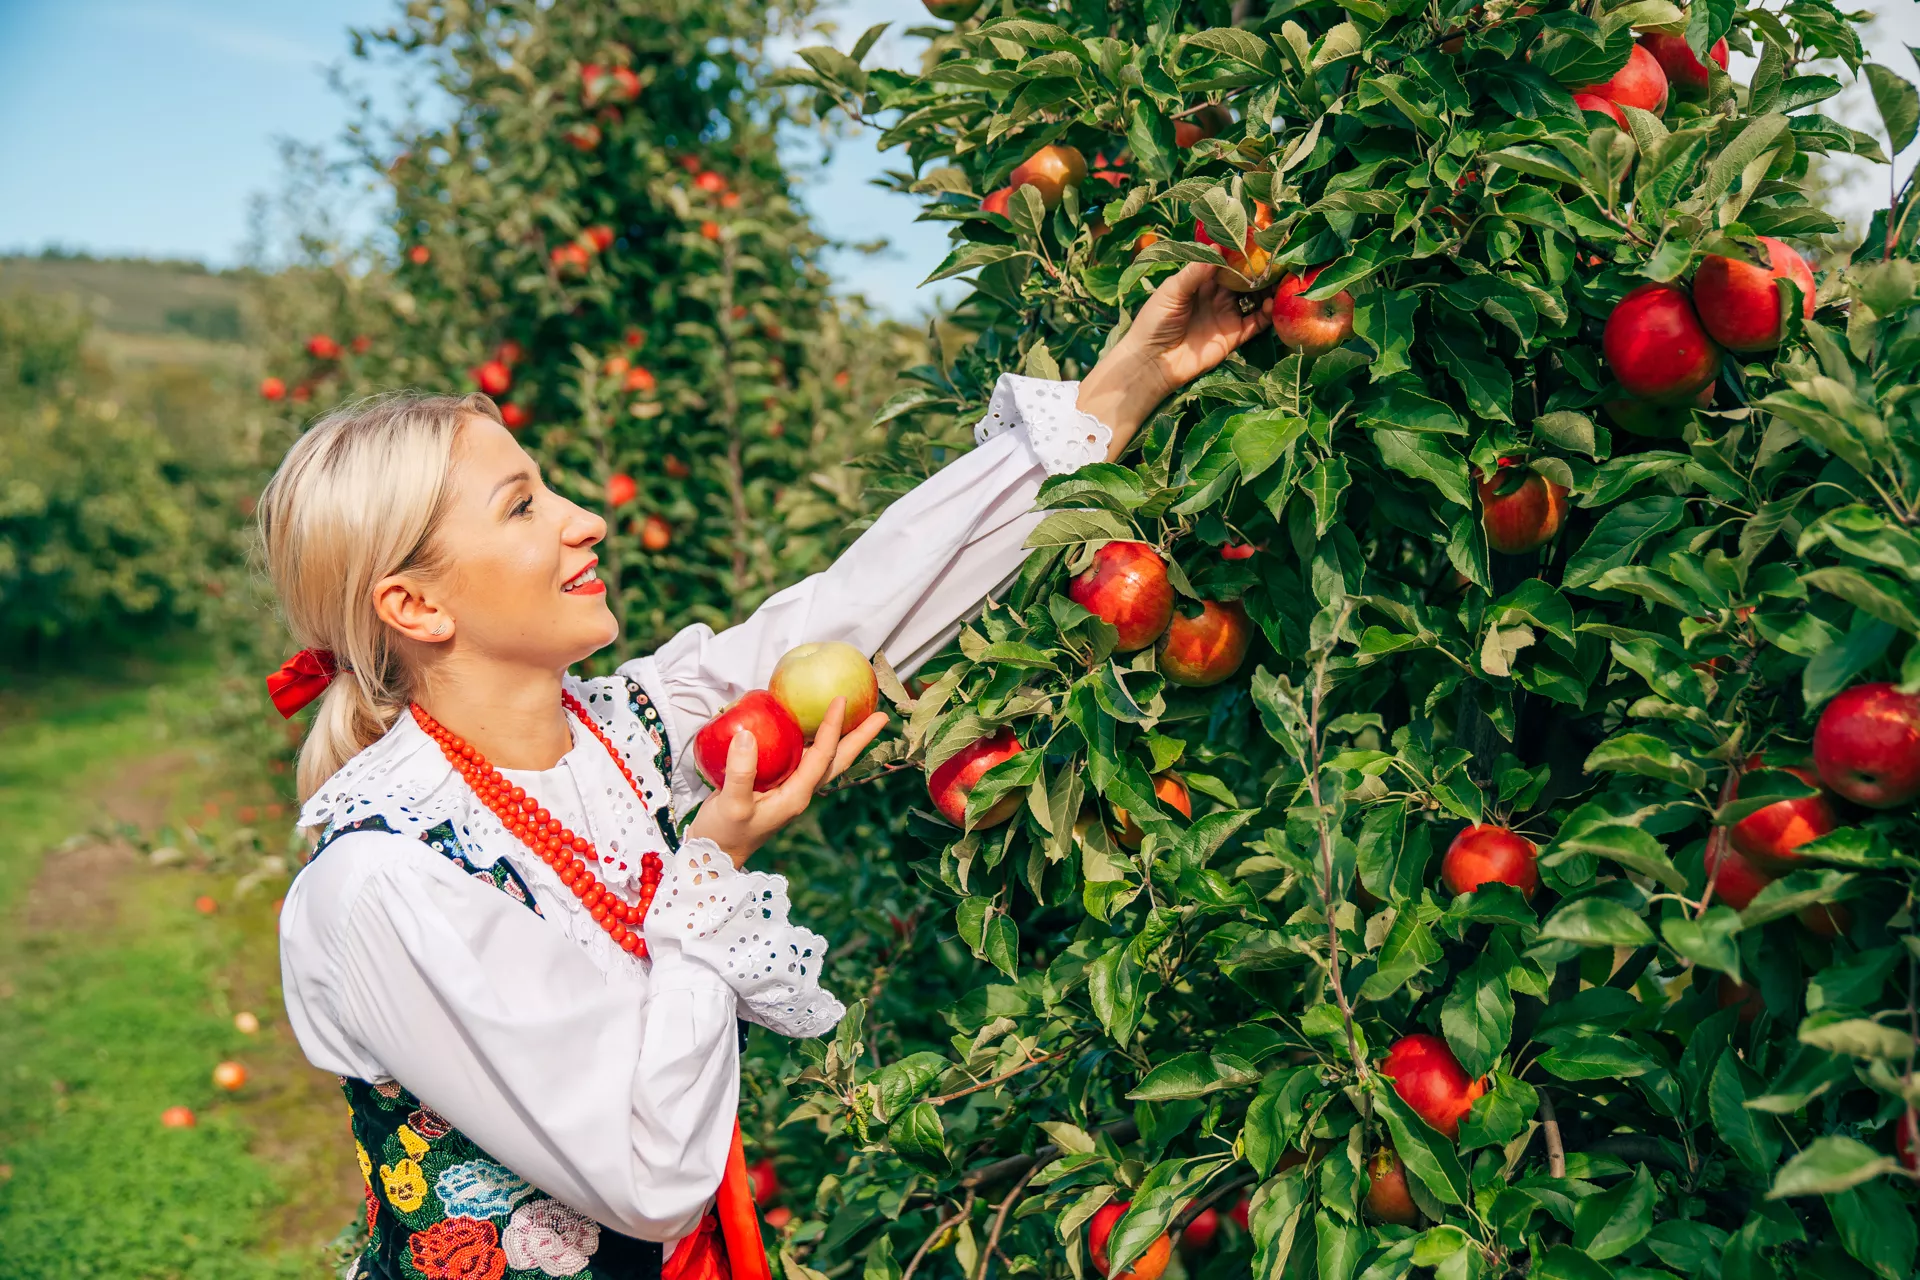 Blick auf eine junge Frau in Goralentracht, die schöne rote Äpfel von einem Baum pflückt. Im Hintergrund sieht man den Weg zwischen den Reihen der Apfelbäume. Der Himmel ist blau und völlig wolkenlos.